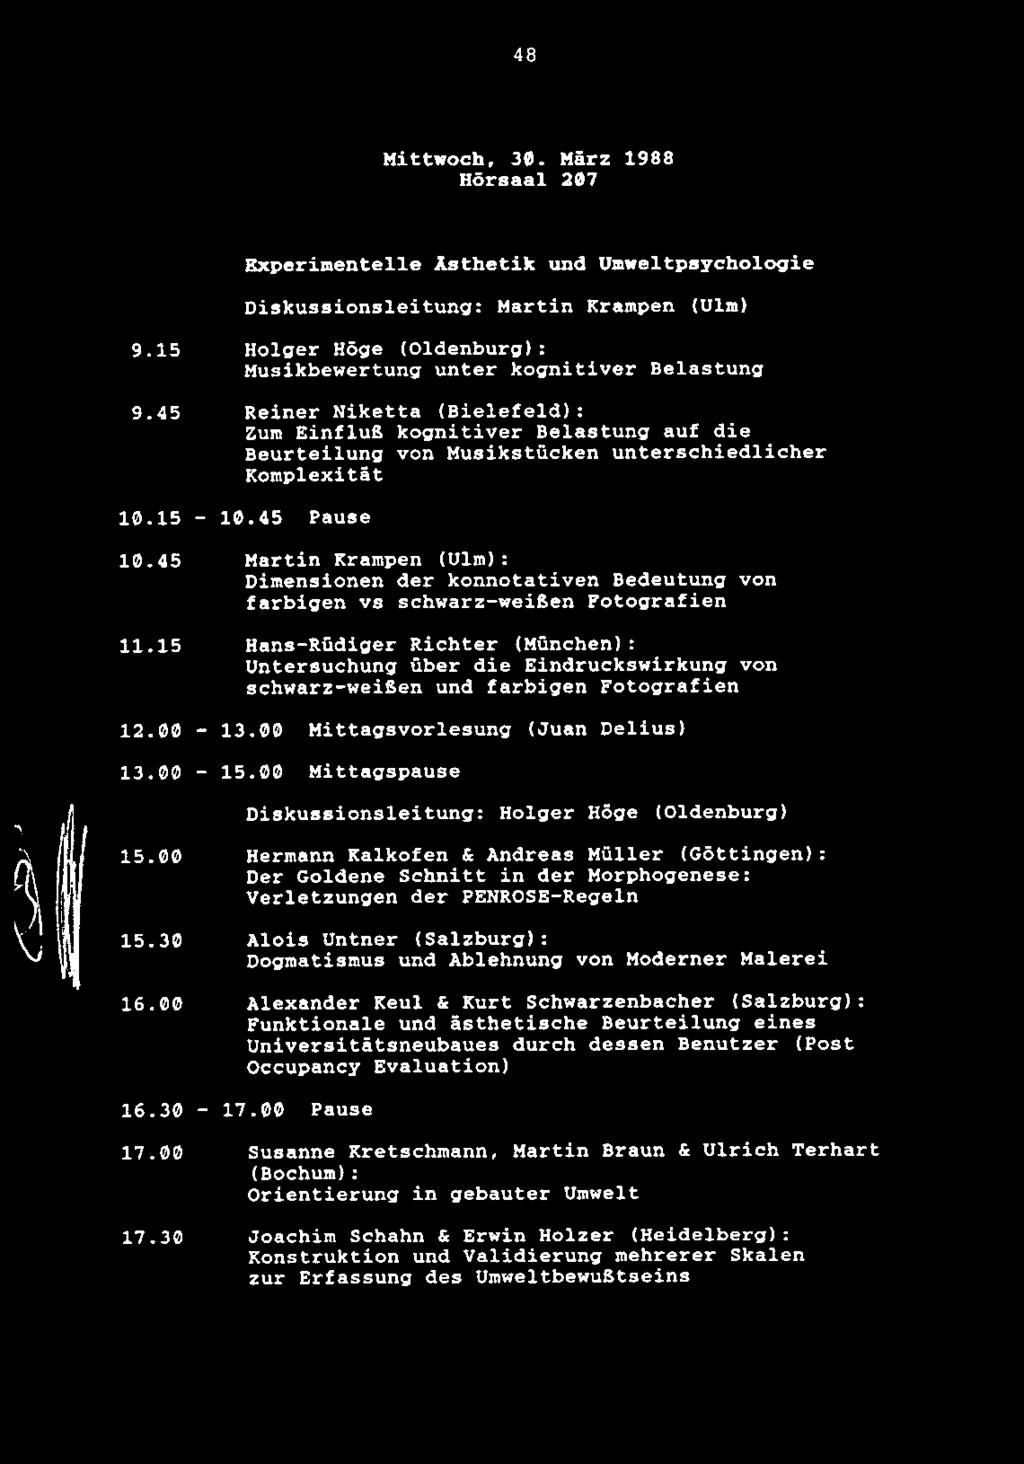 48 Mittwoch, 30. Harz 1988 Hdrsaal 207 Experimentelle Asthetik und Umweltpsychologie Diskussionsleitung: Martin Krampen (Ulm) 9.15 9.45 10.15 10.45 11.15 12.00 13.